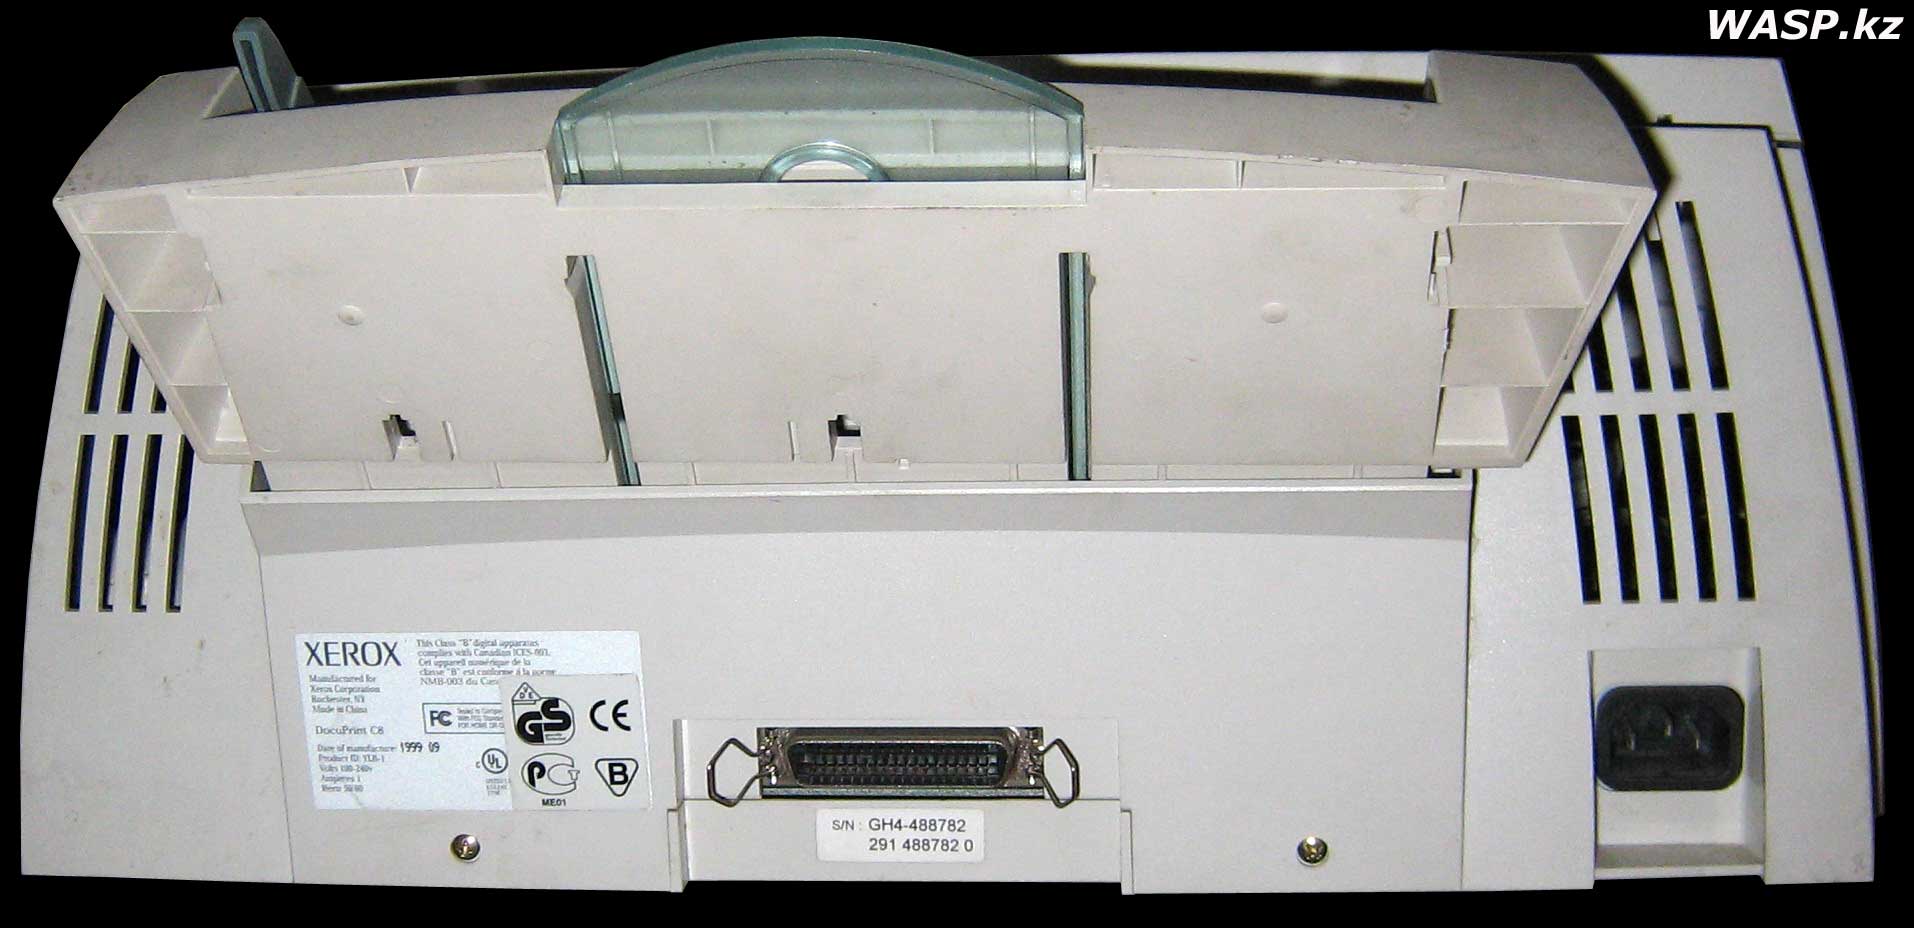 Xerox DocuPrint C8 струйный цветной принтер, статья